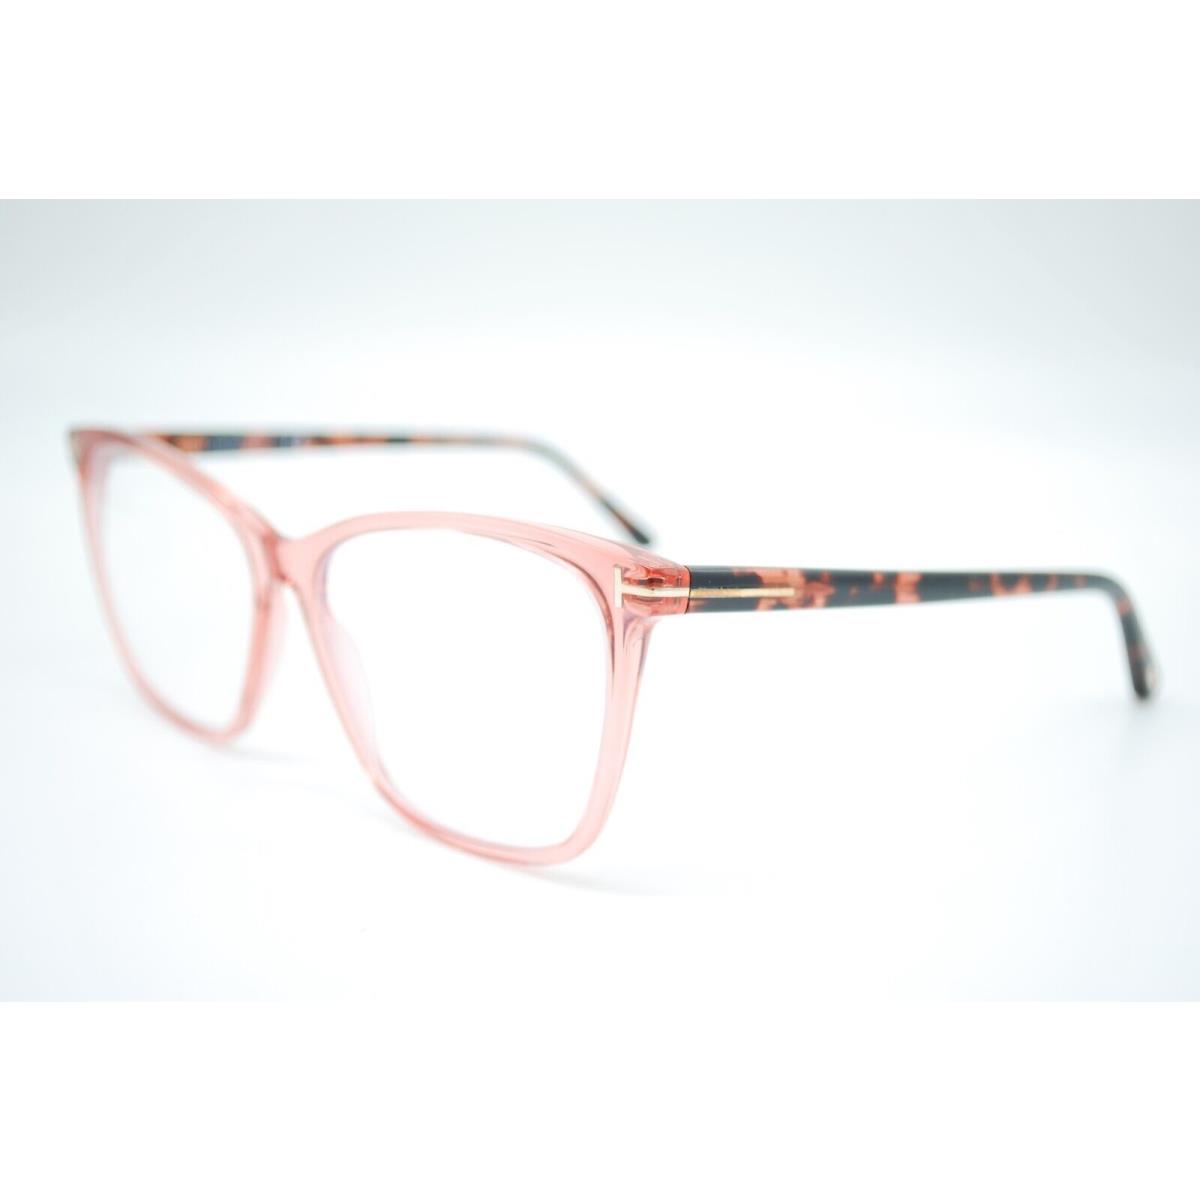 Tom Ford eyeglasses  - CORAL PINK Frame 0